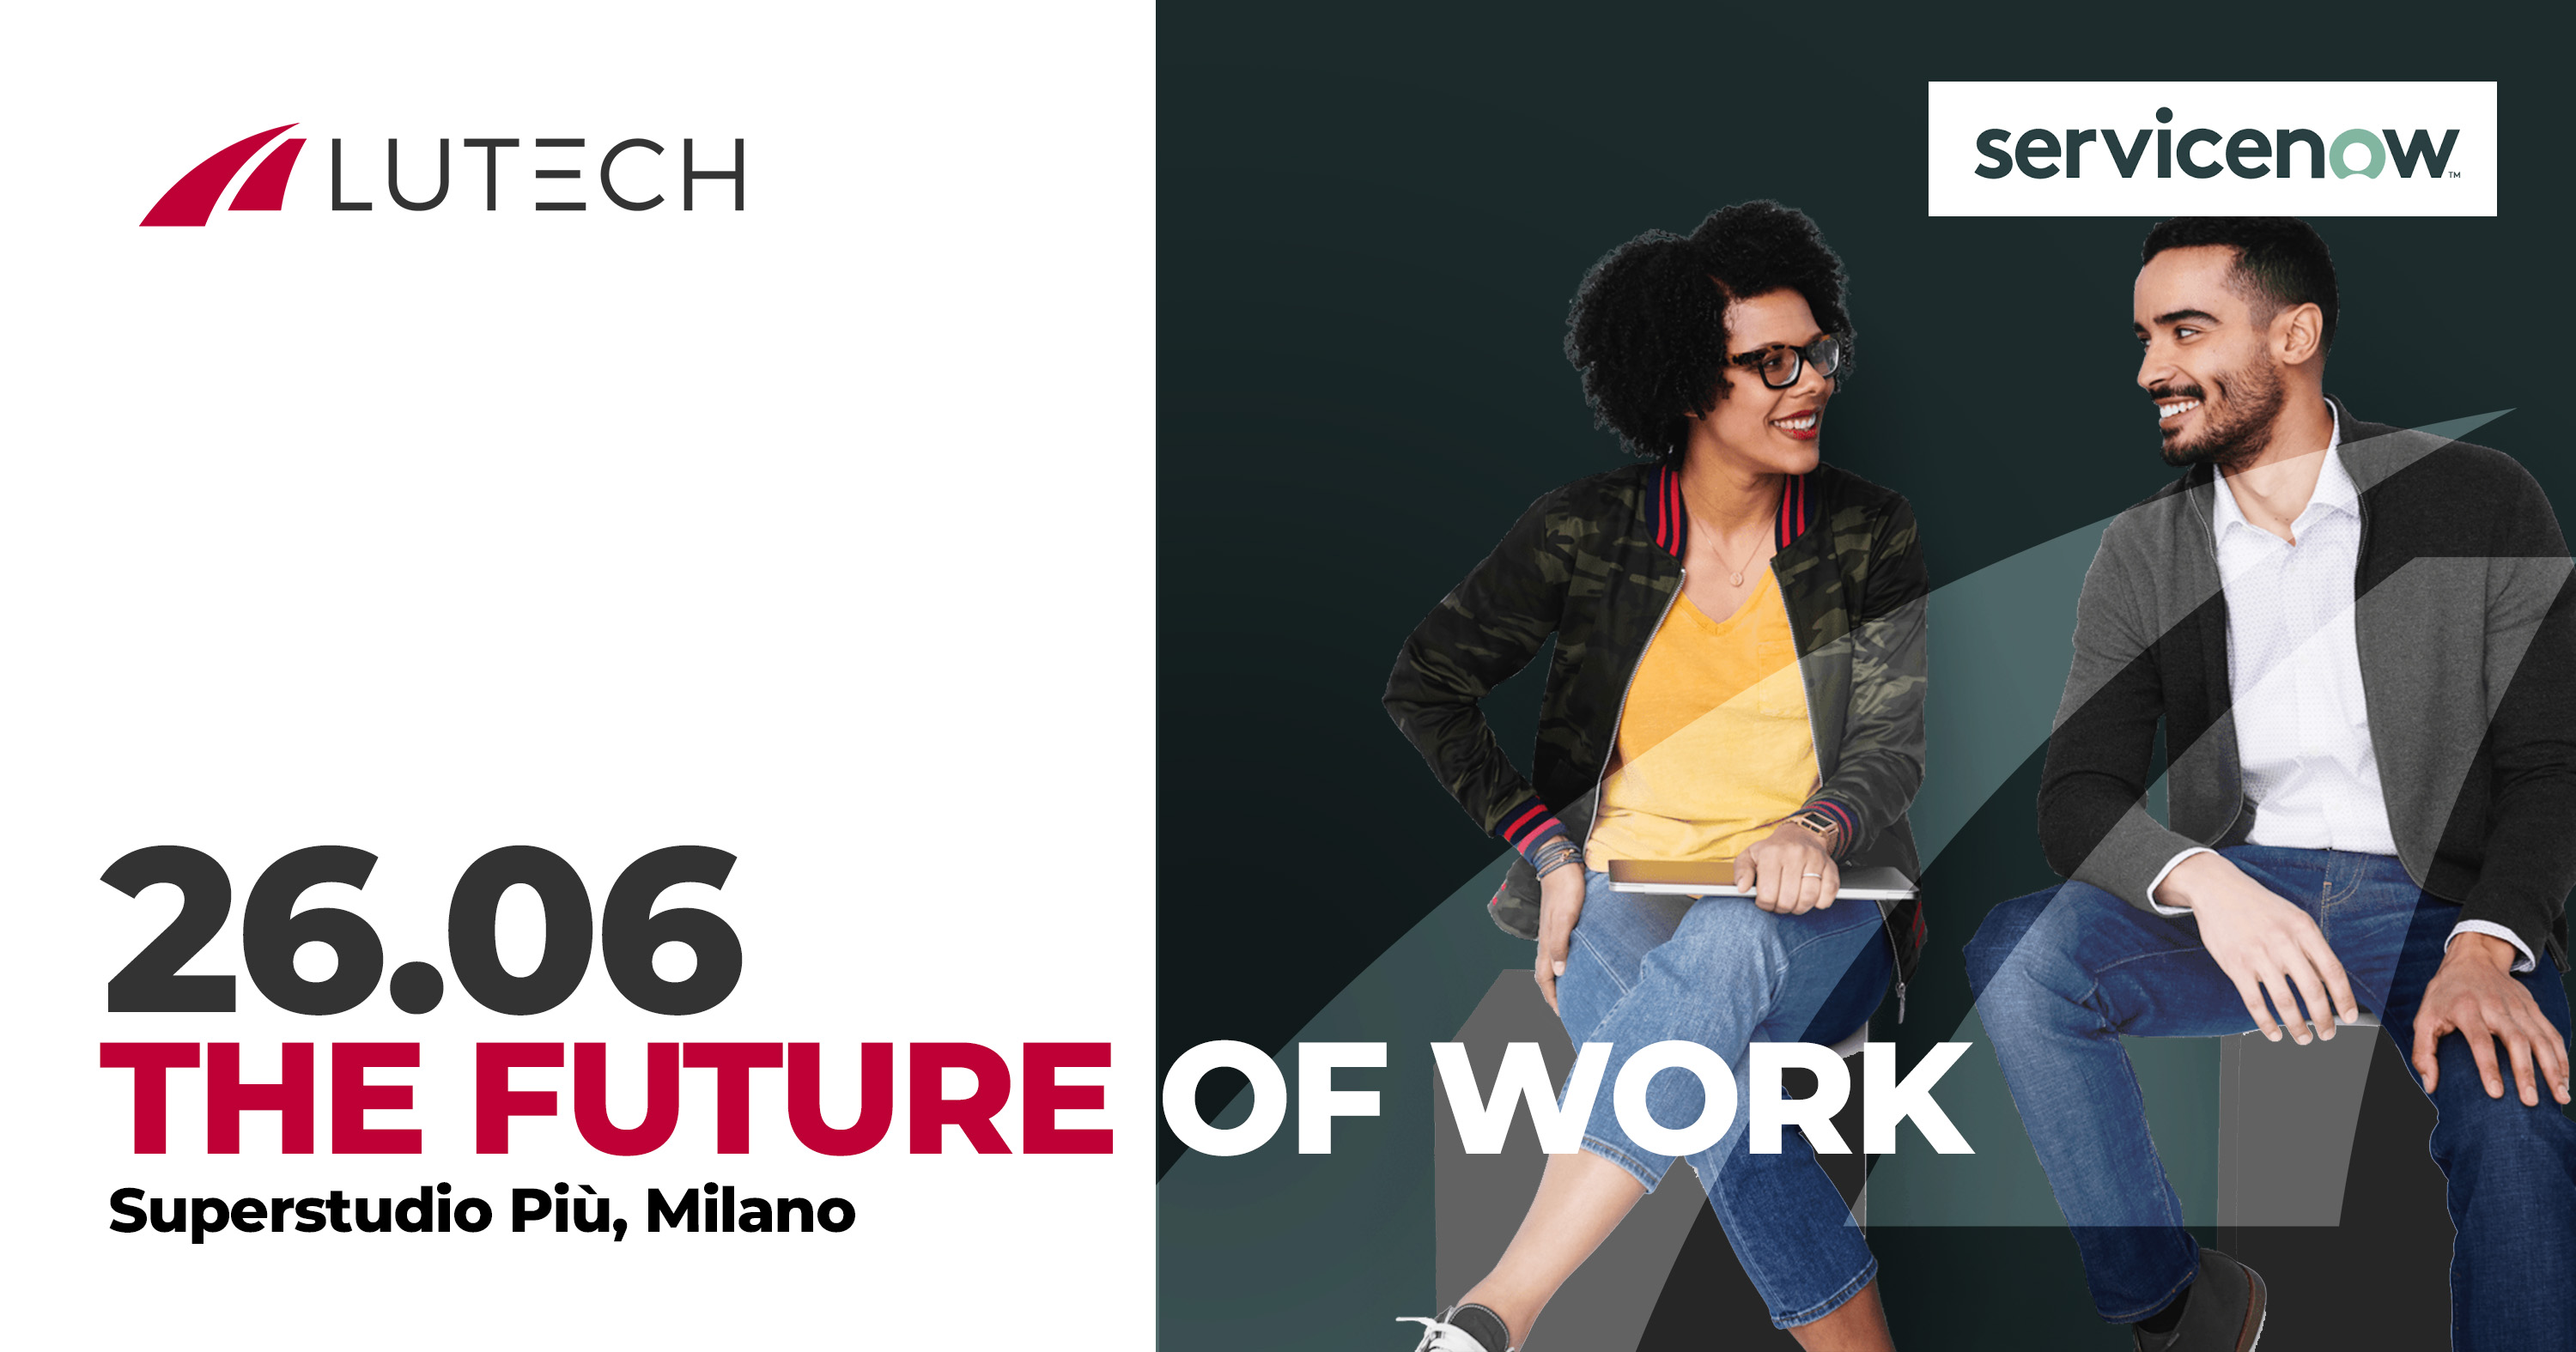 The Future of Work è l'evento di ServiceNow sponsorizzato da Lutech